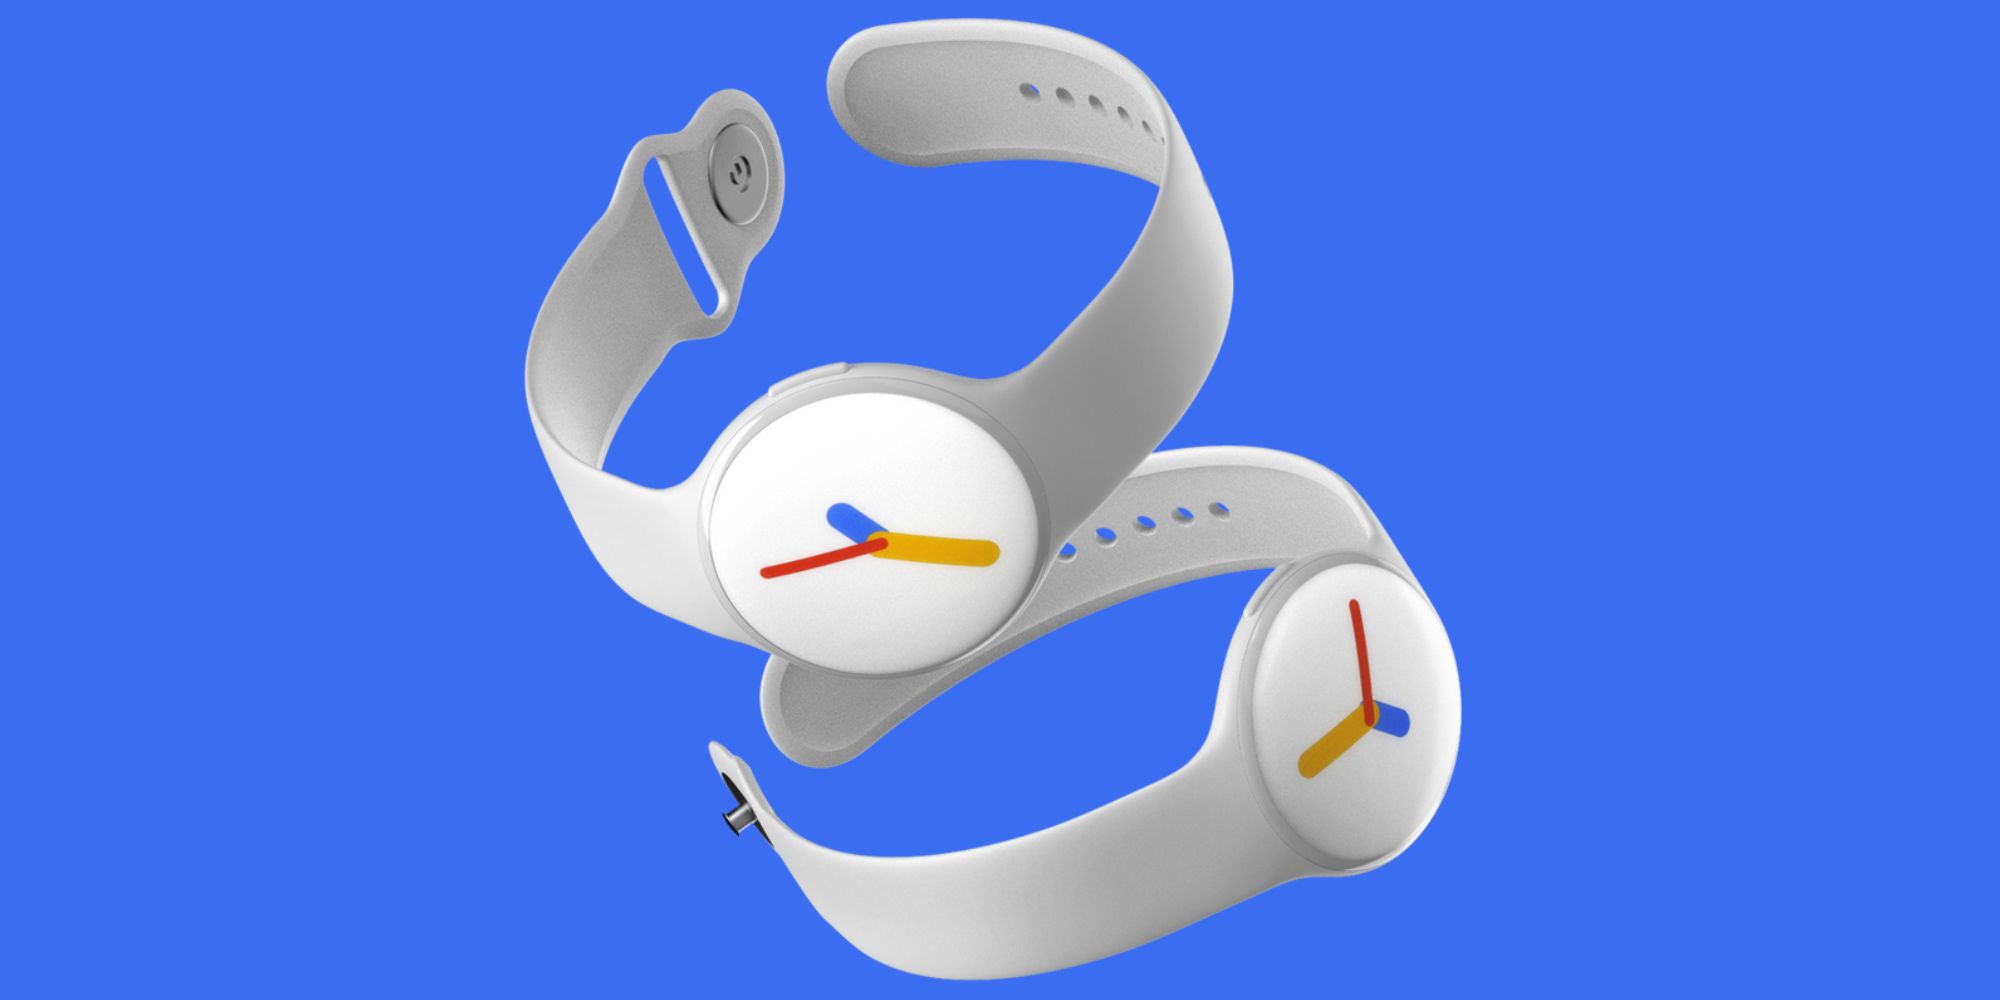 google pixel watch concept render white